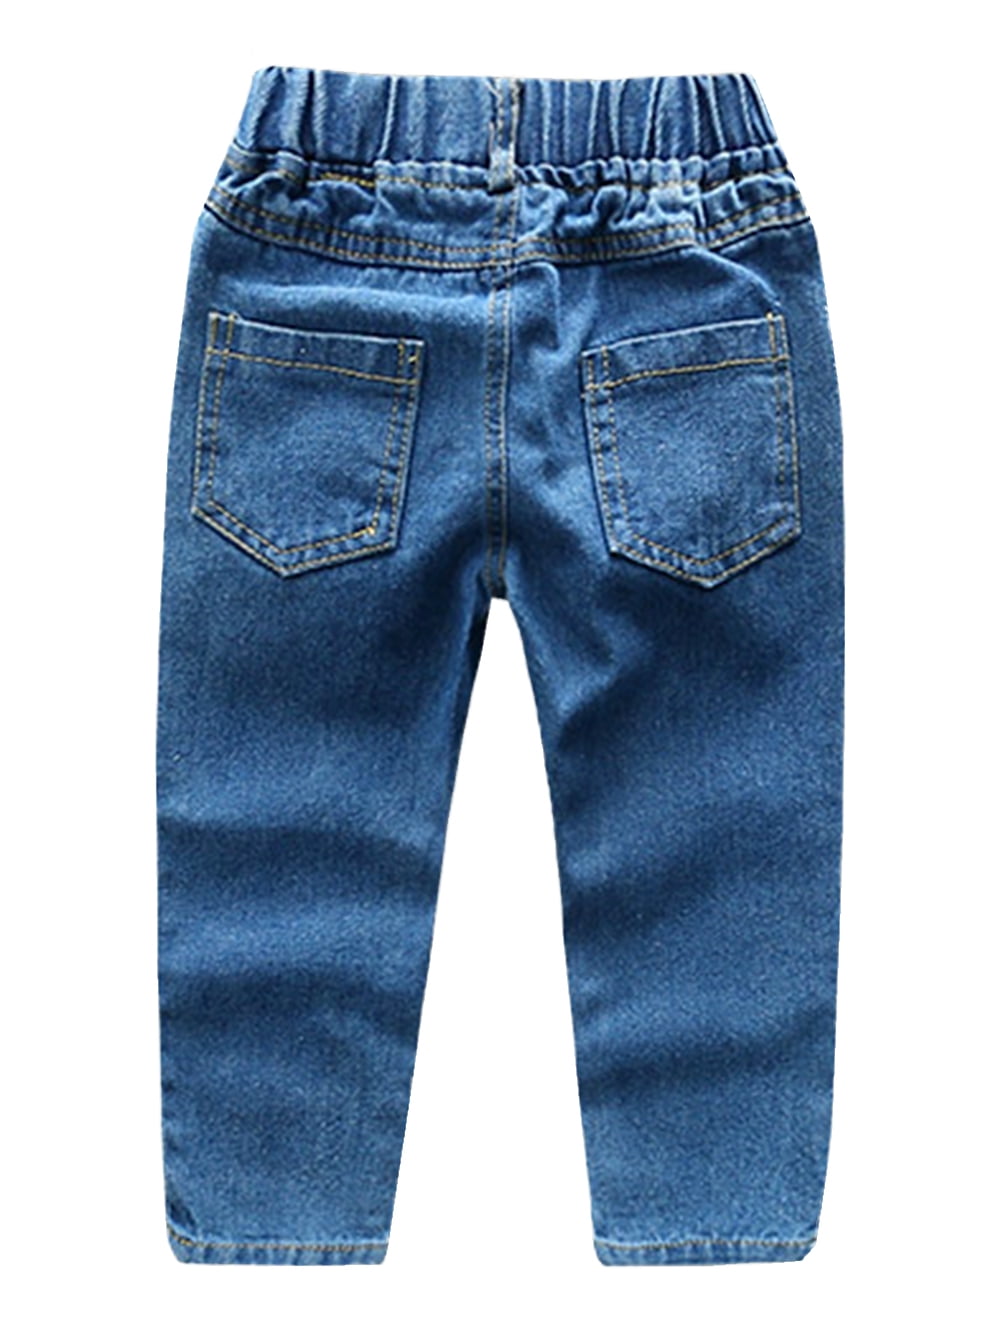 Ripped Stylish Jeans – Gallini